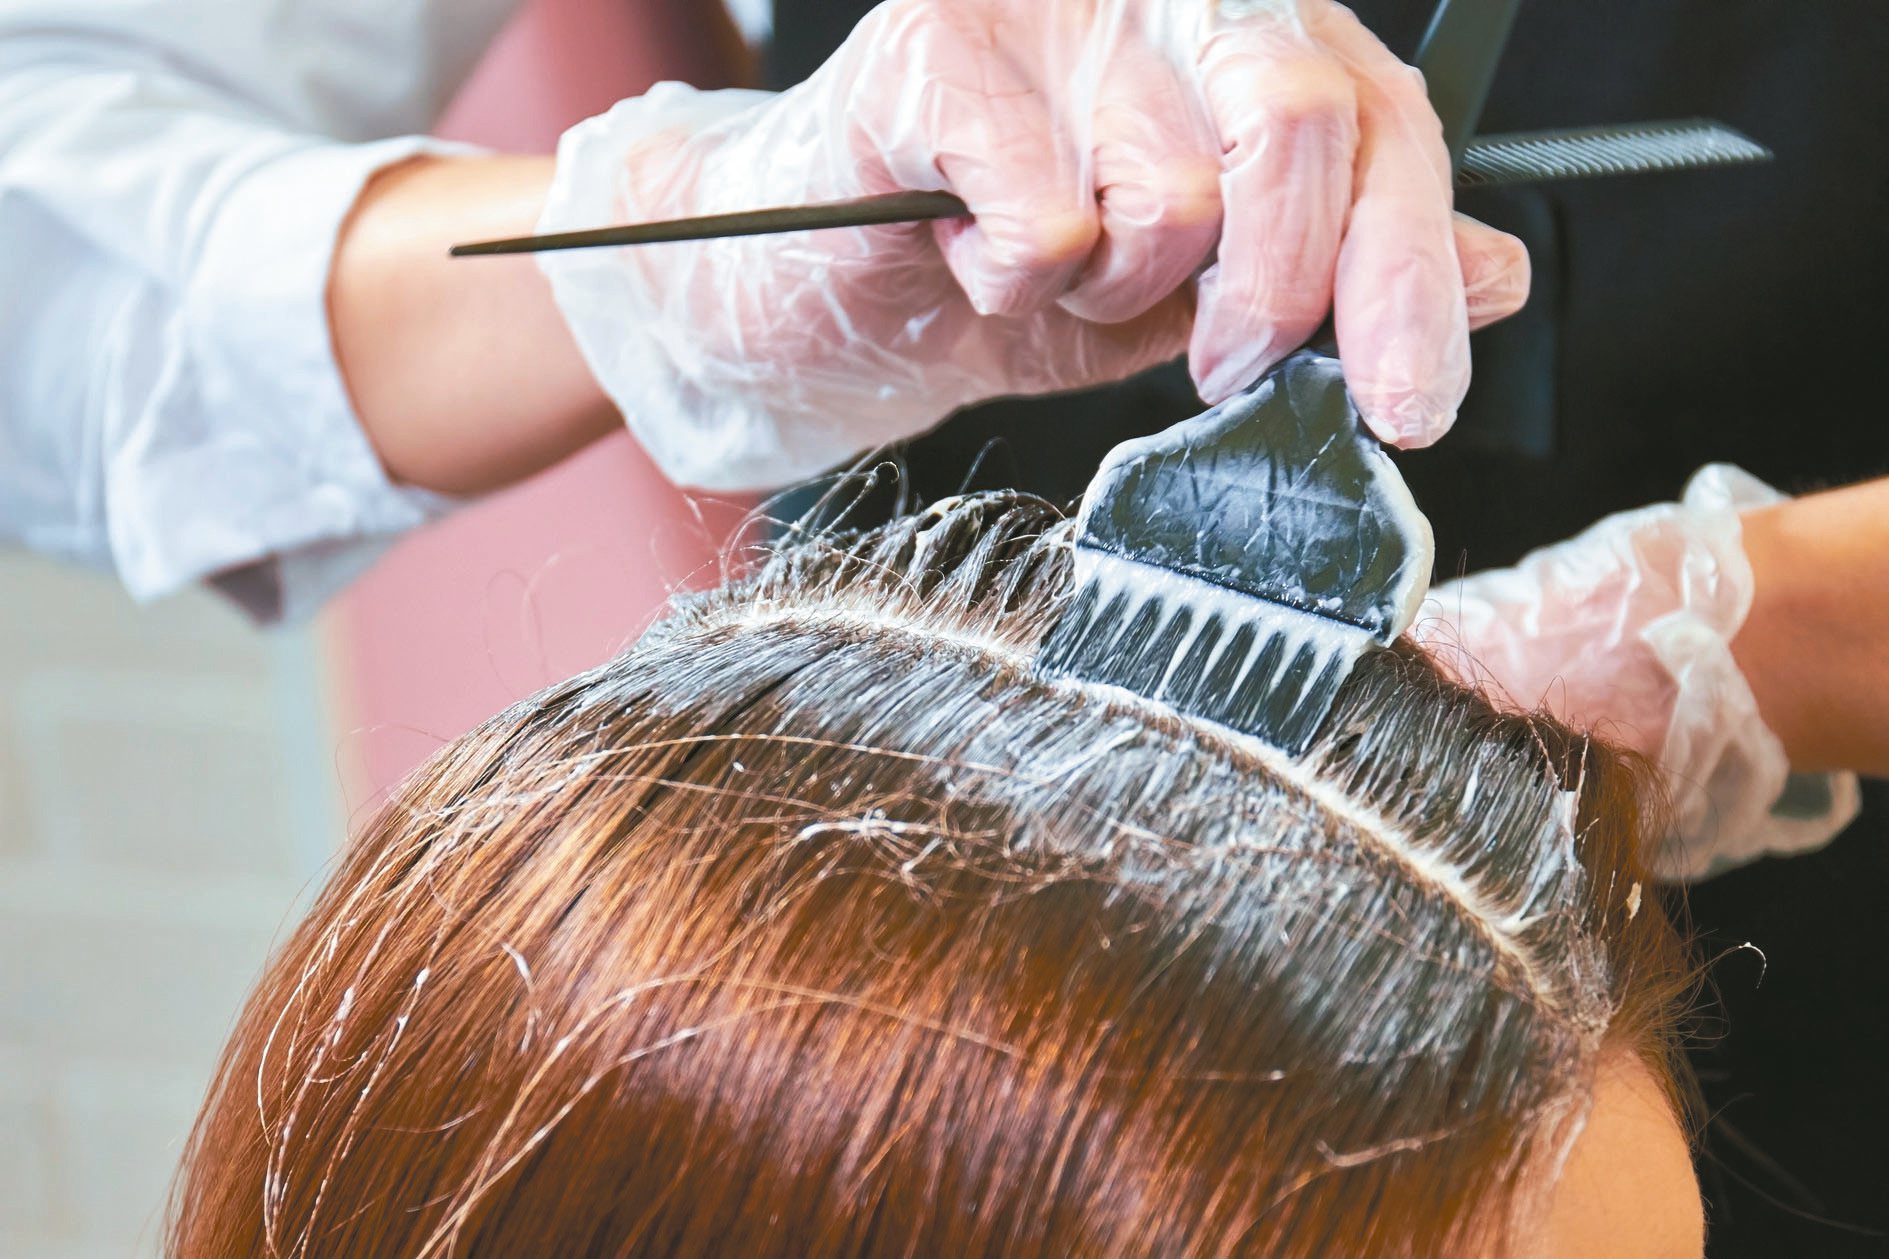 染髮劑內含多種化學成分，包括芳香胺類染料、氧化劑、鹼性劑、乳化劑和各式添加劑，染髮劑中部分成分的代謝物具有潛在的腎毒性。染髮示意圖，圖片來源／123RF。